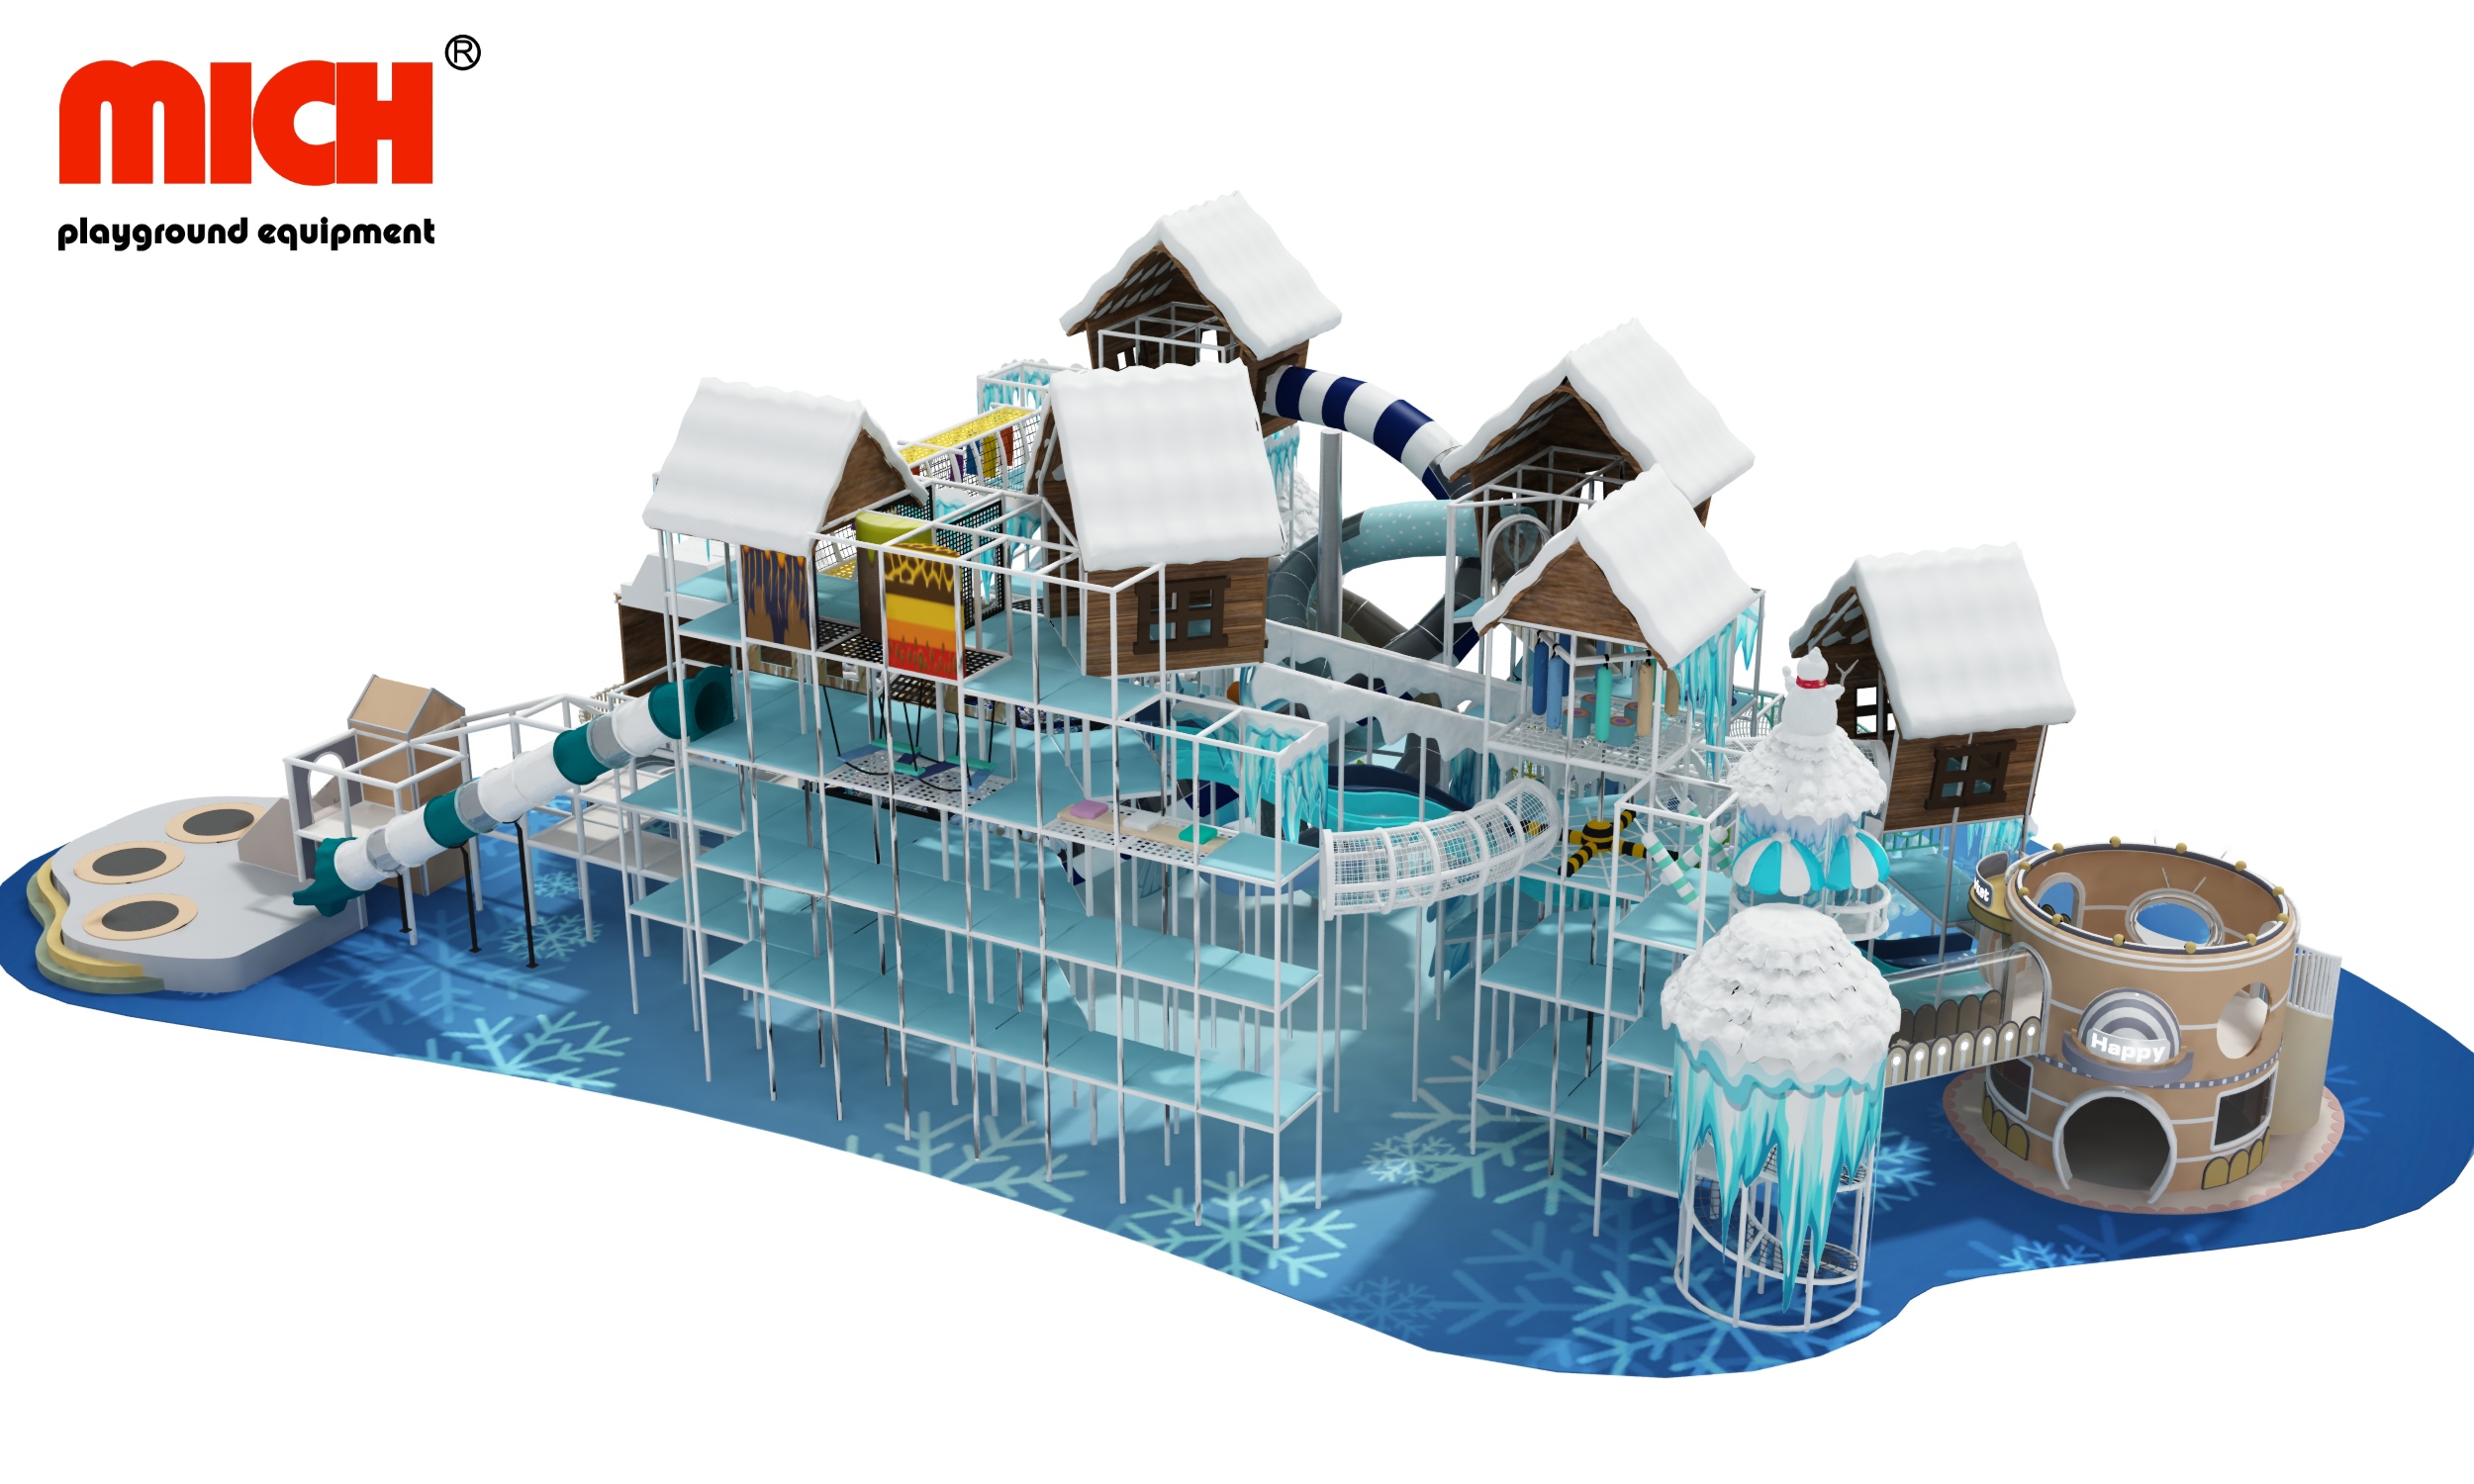 Tema del tema del castello di ghiaccio e neve nuovo parco giochi indoor in vendita